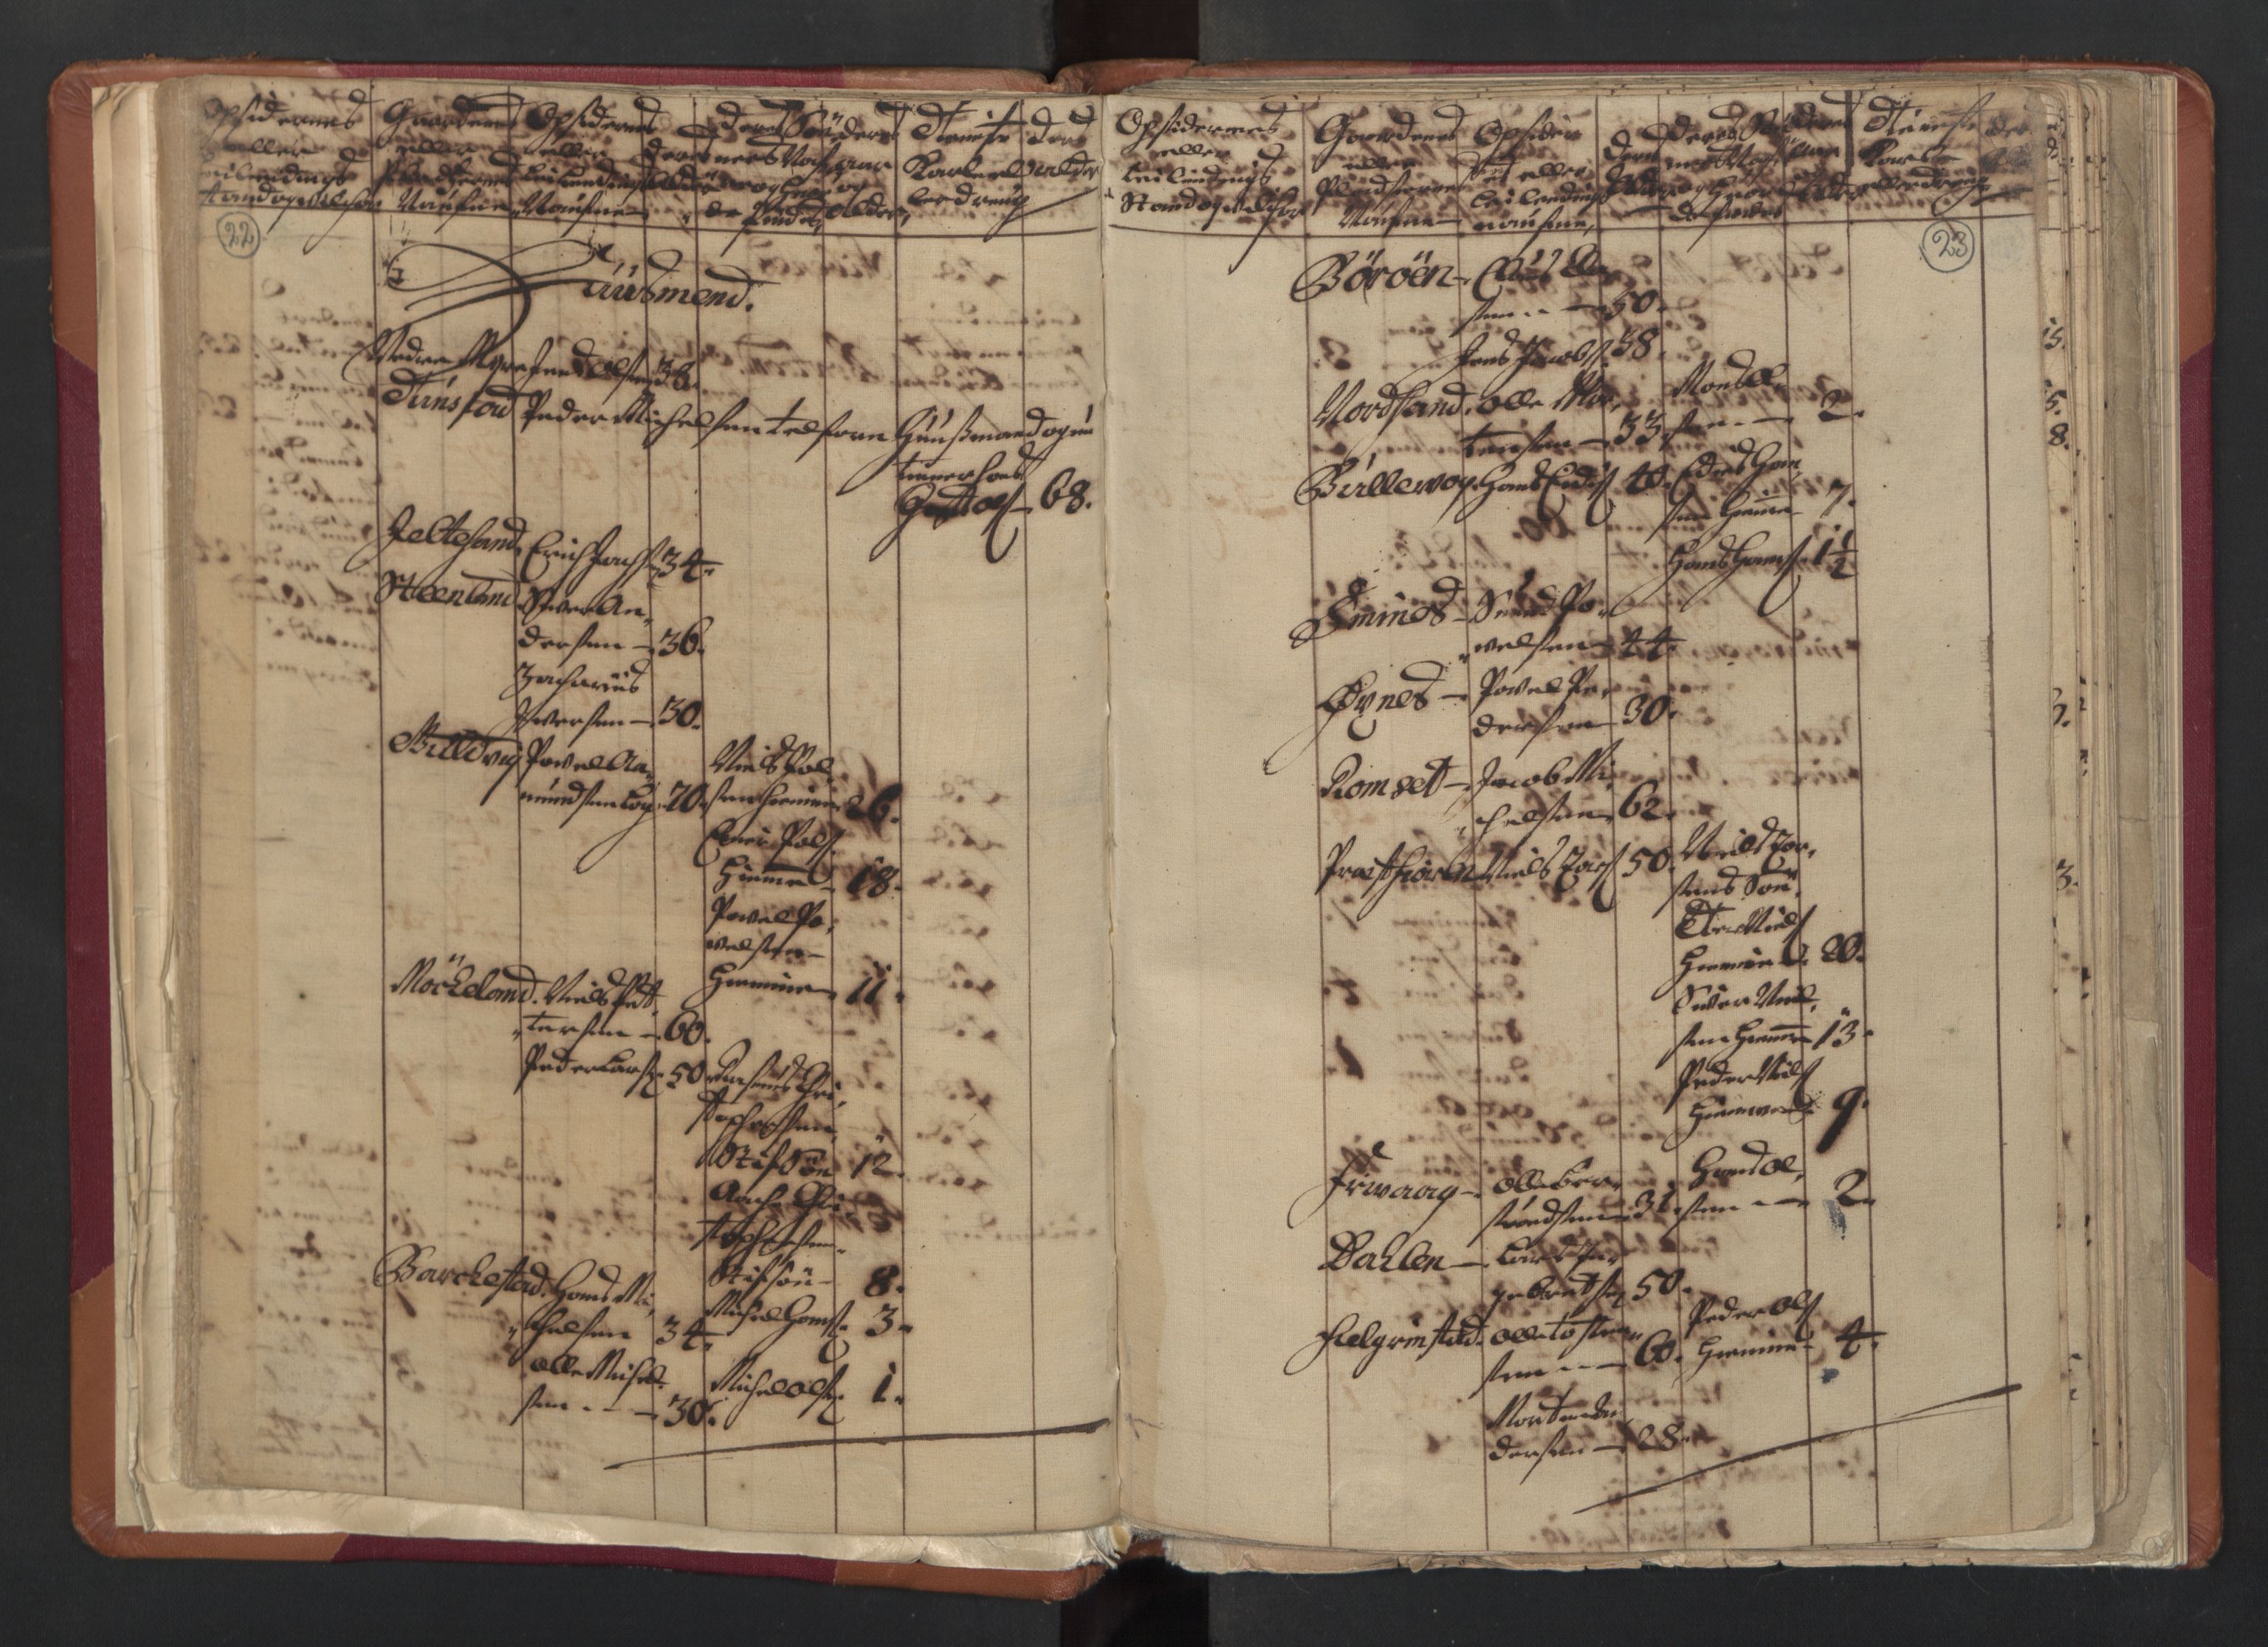 RA, Census (manntall) 1701, no. 18: Vesterålen, Andenes and Lofoten fogderi, 1701, p. 22-23